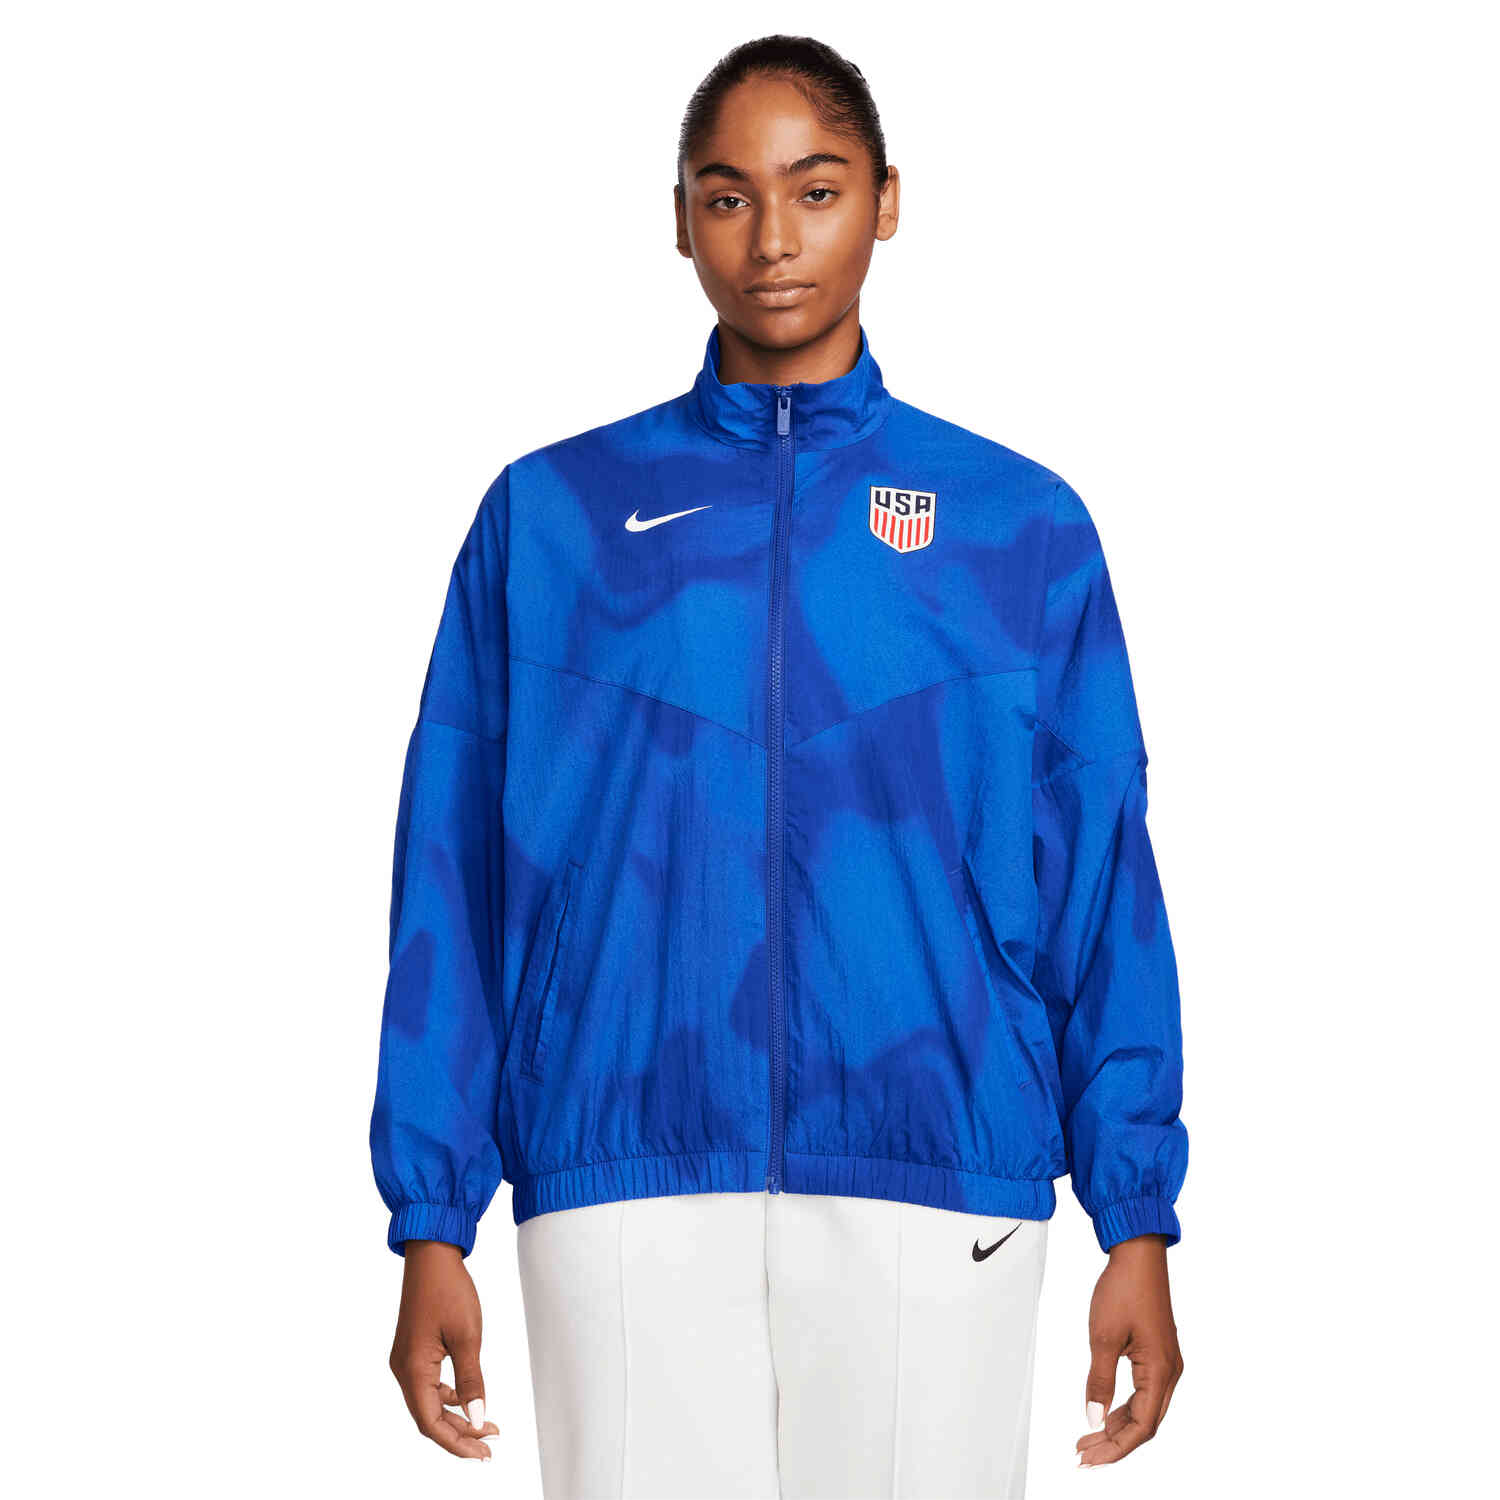 Womens Nike USA Windrunner Jacket - Old Royal/White - SoccerPro